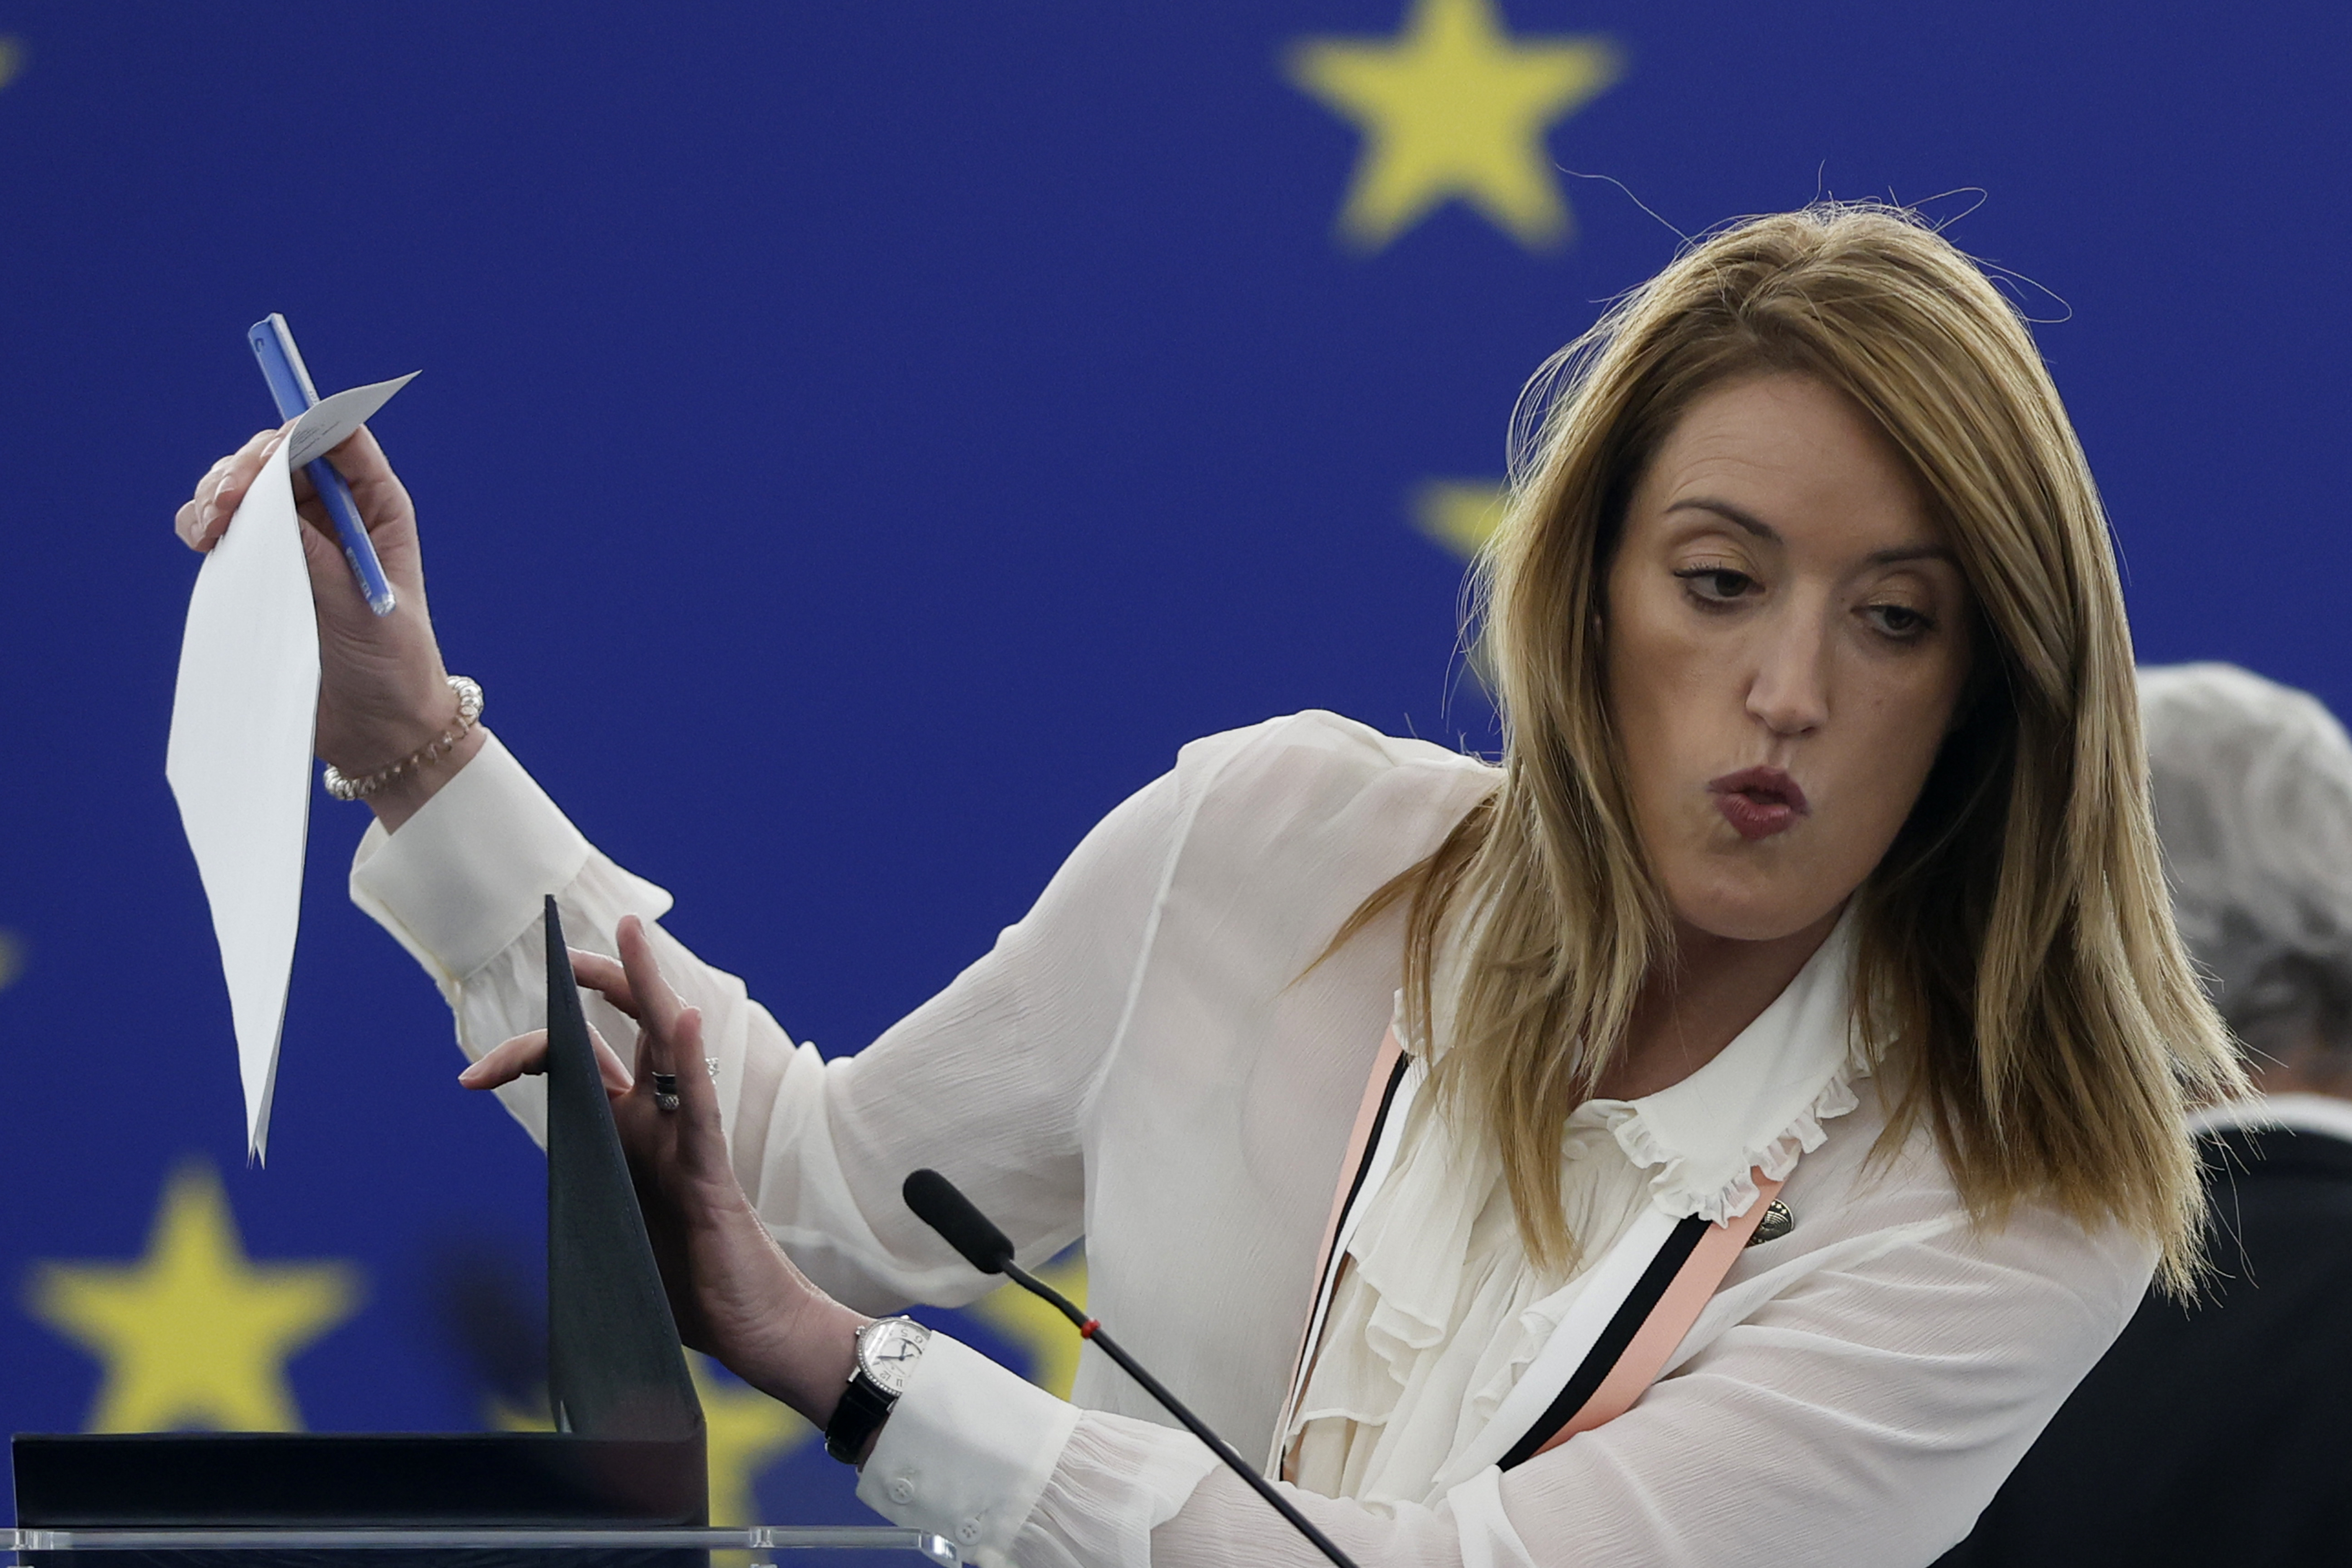 La eurodiputada y ex vicepresidente de la Eurocámara Eva Kaili habría admitido parcialmente su implicación en la corrupción, según las informaciones reveladas por varios medios de comunicación. (AP)